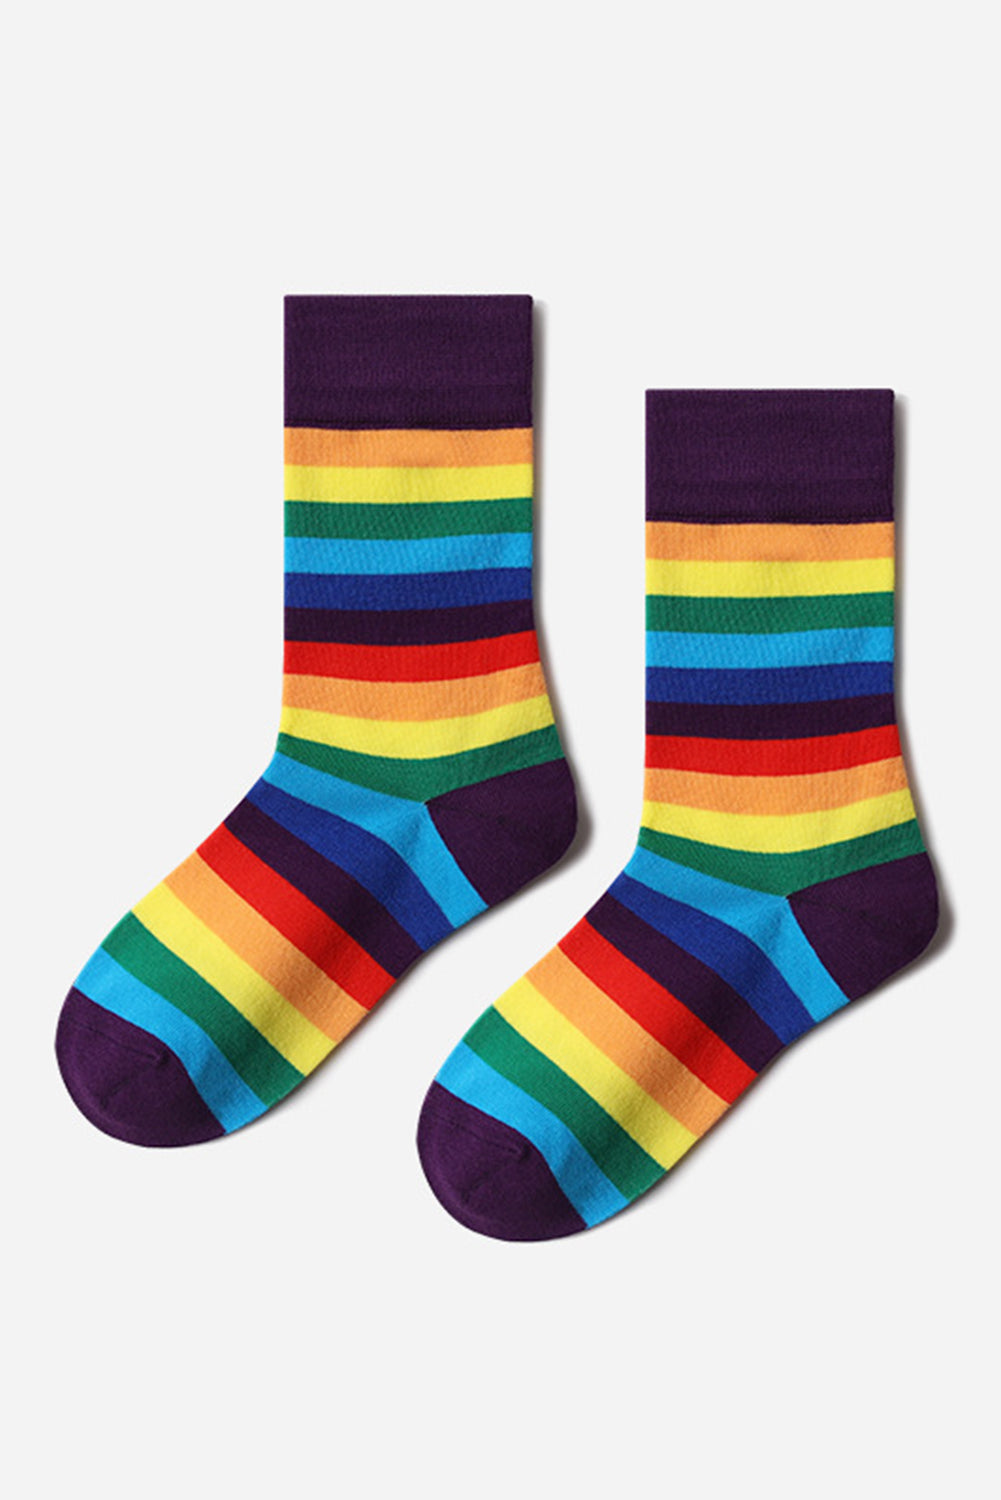 BH041619-8, Purple Pride Sport Socks Men Women Rainbow LGBTQ Accessories Socks